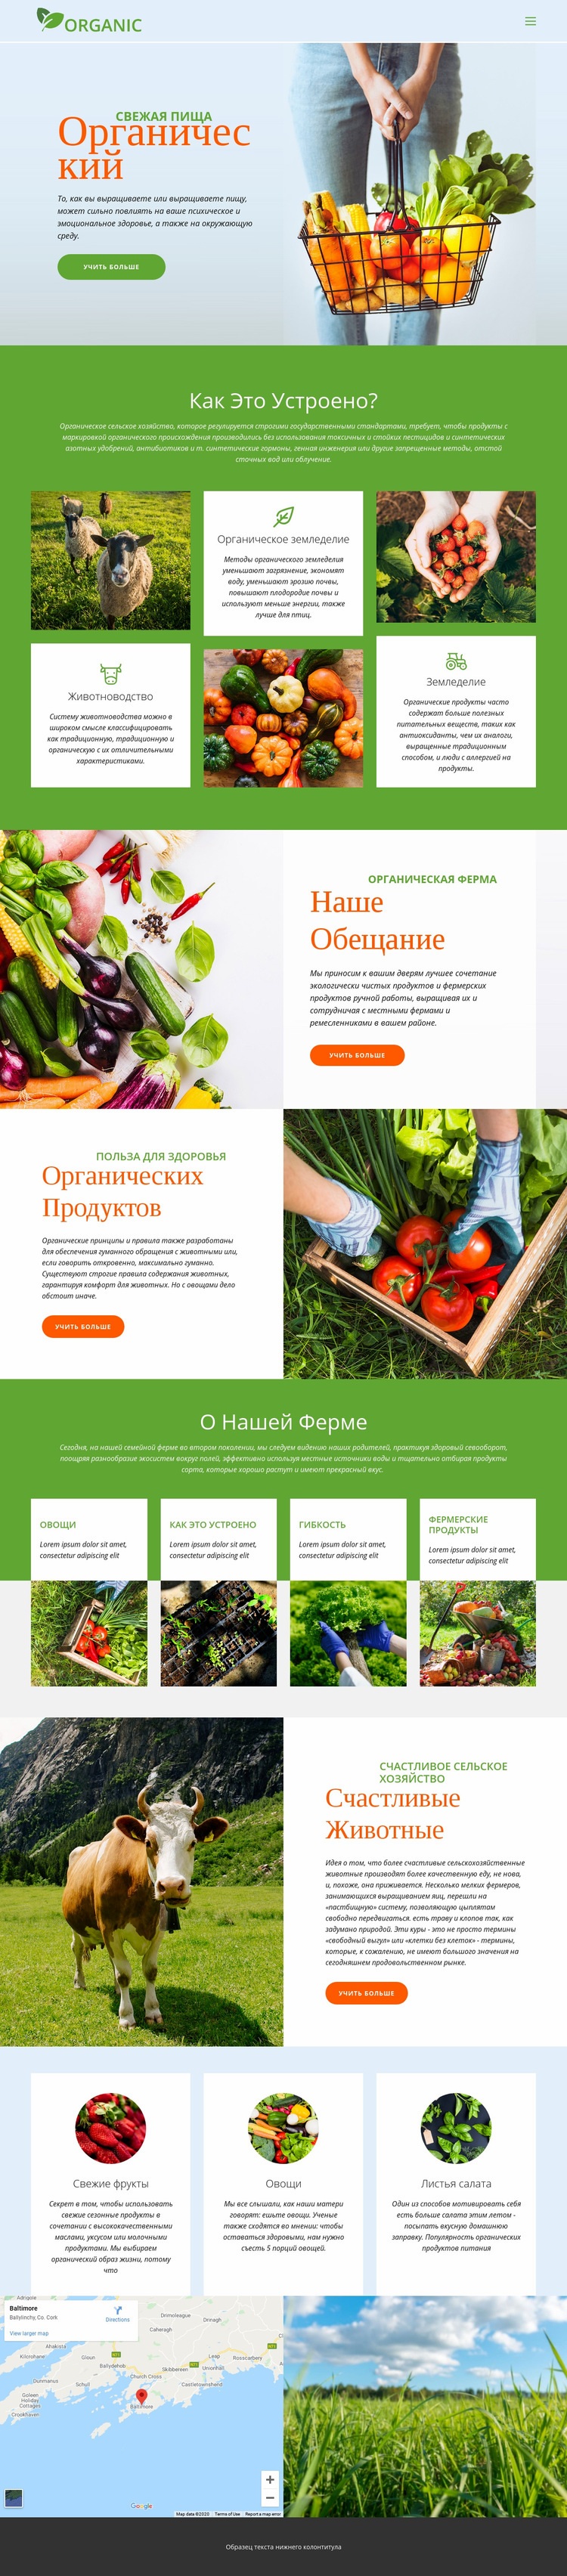 Ешьте лучшие органические продукты Мокап веб-сайта